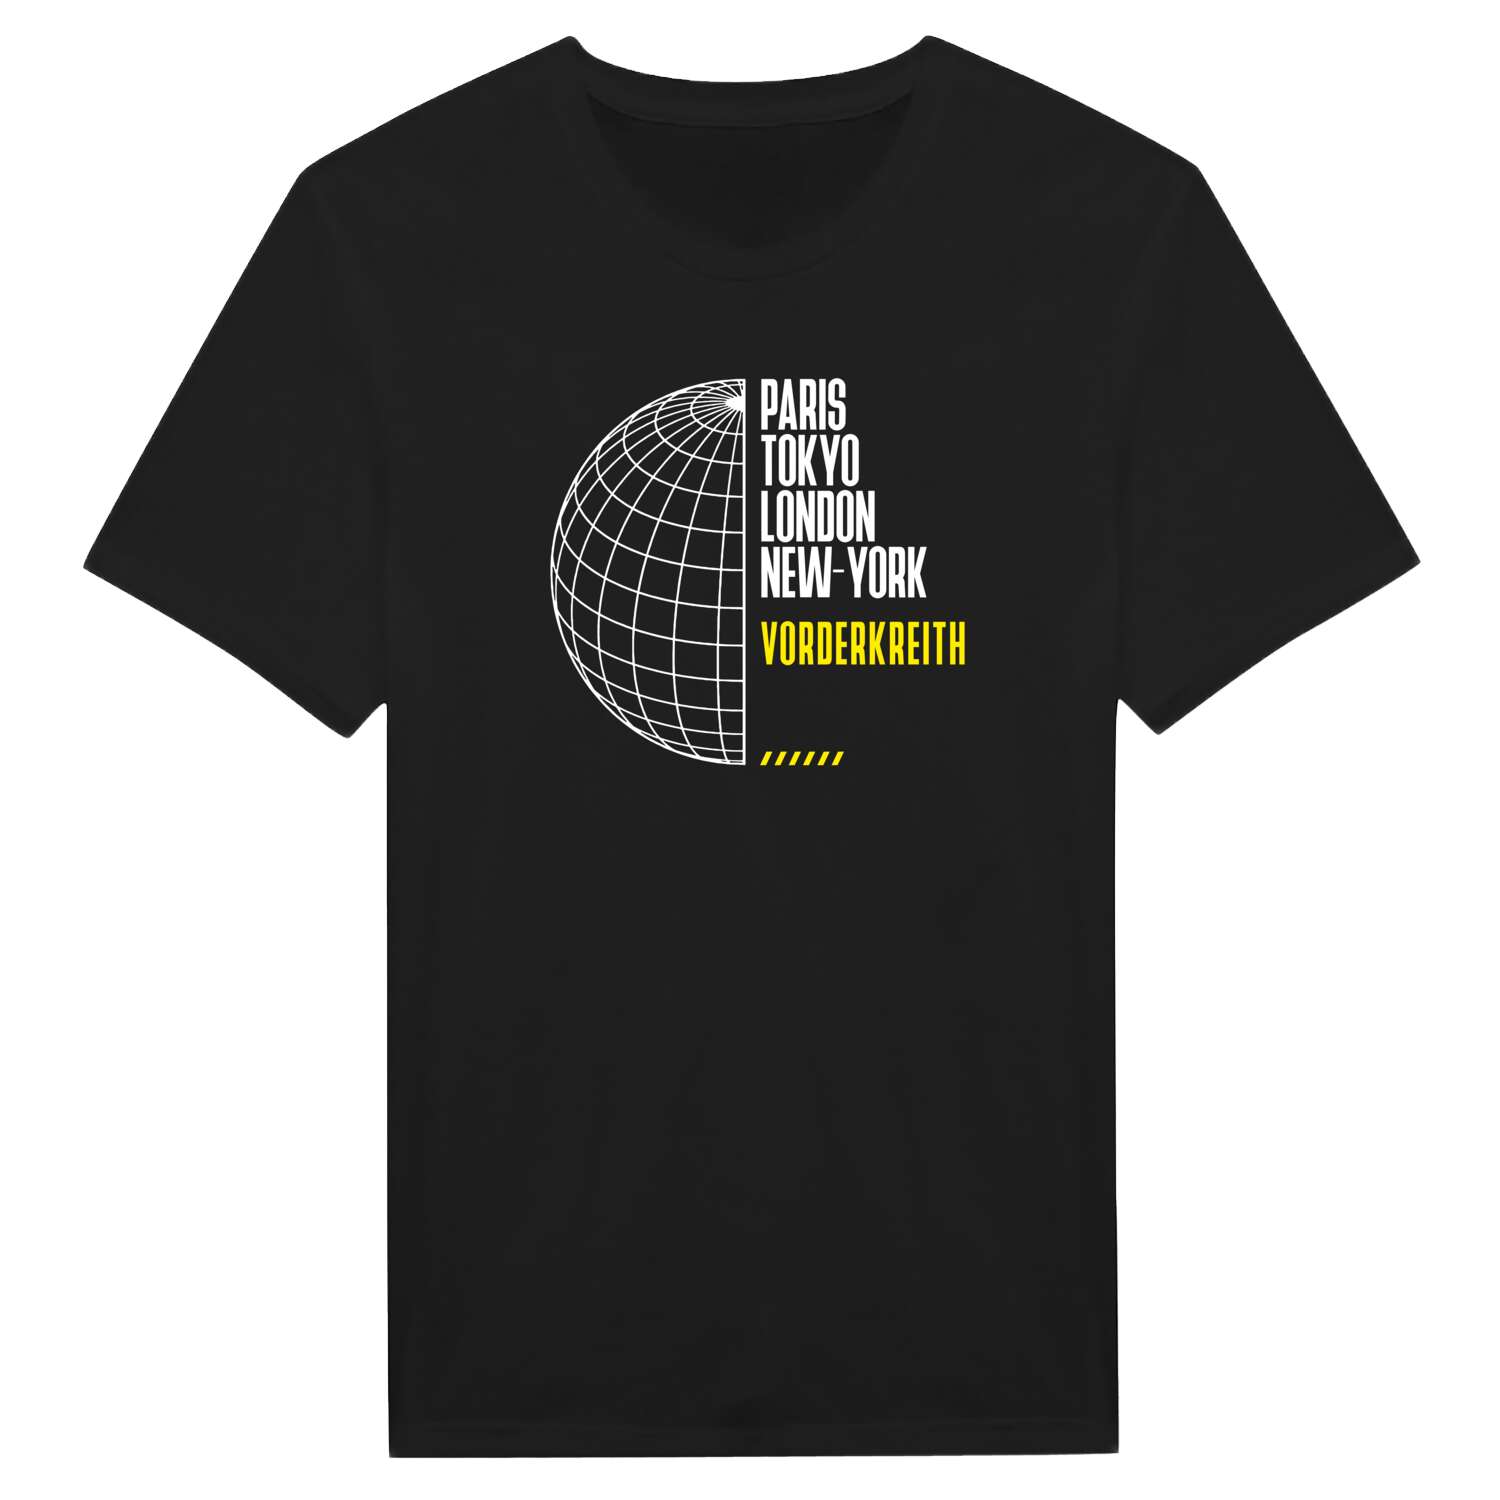 Vorderkreith T-Shirt »Paris Tokyo London«